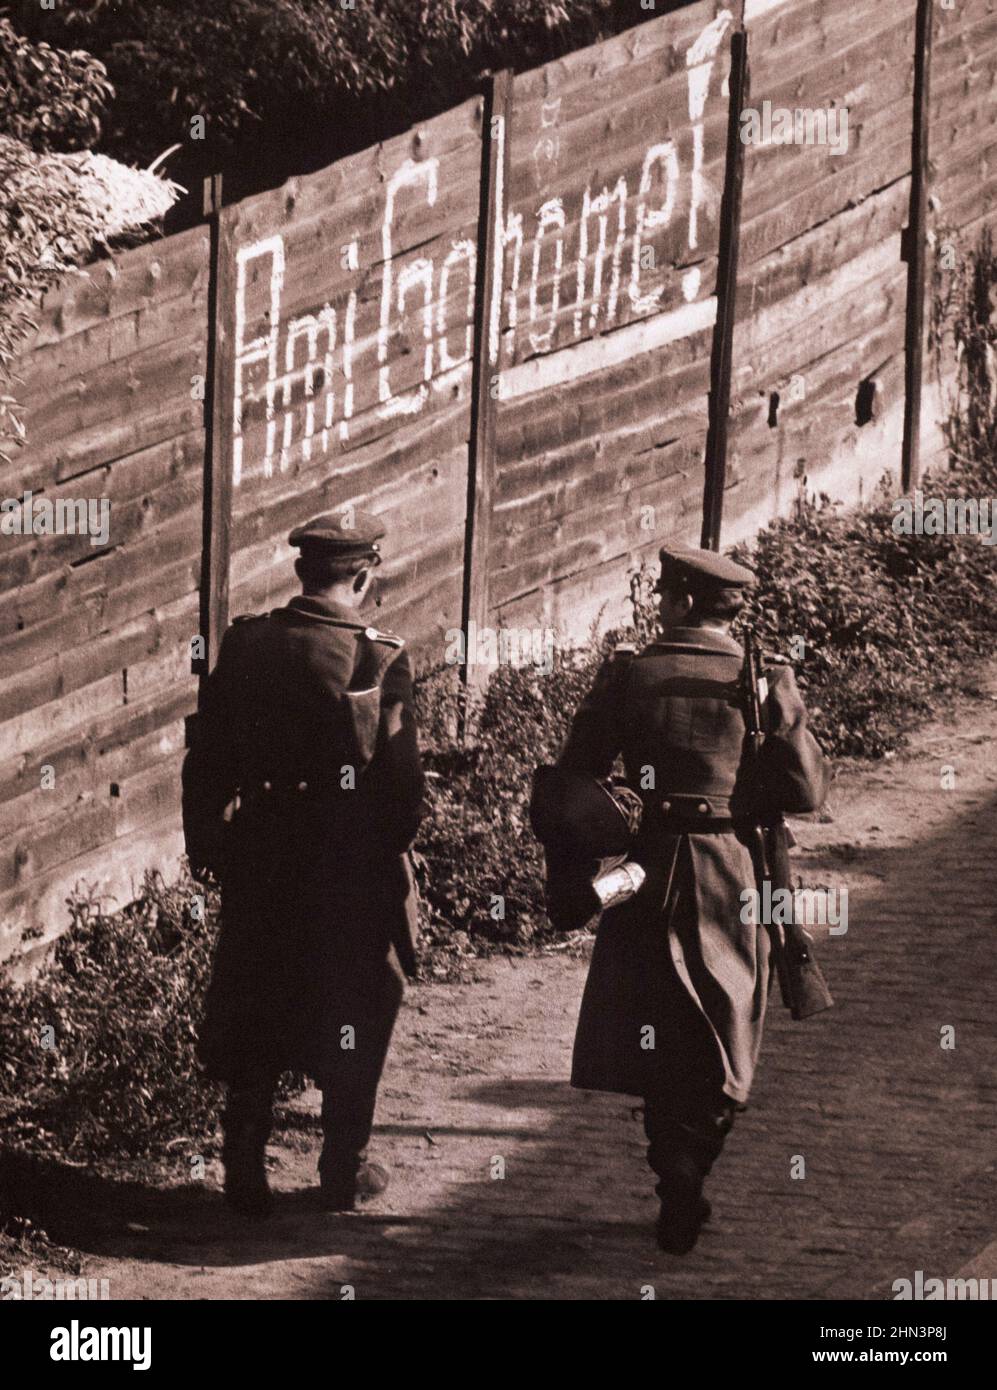 Berliner Krise von 1961: Mauerbau Vintage-Foto der Heidelberstraße, Neukölln Berlin. Ostdeutschland. Oktober 19, 1961 Stockfoto